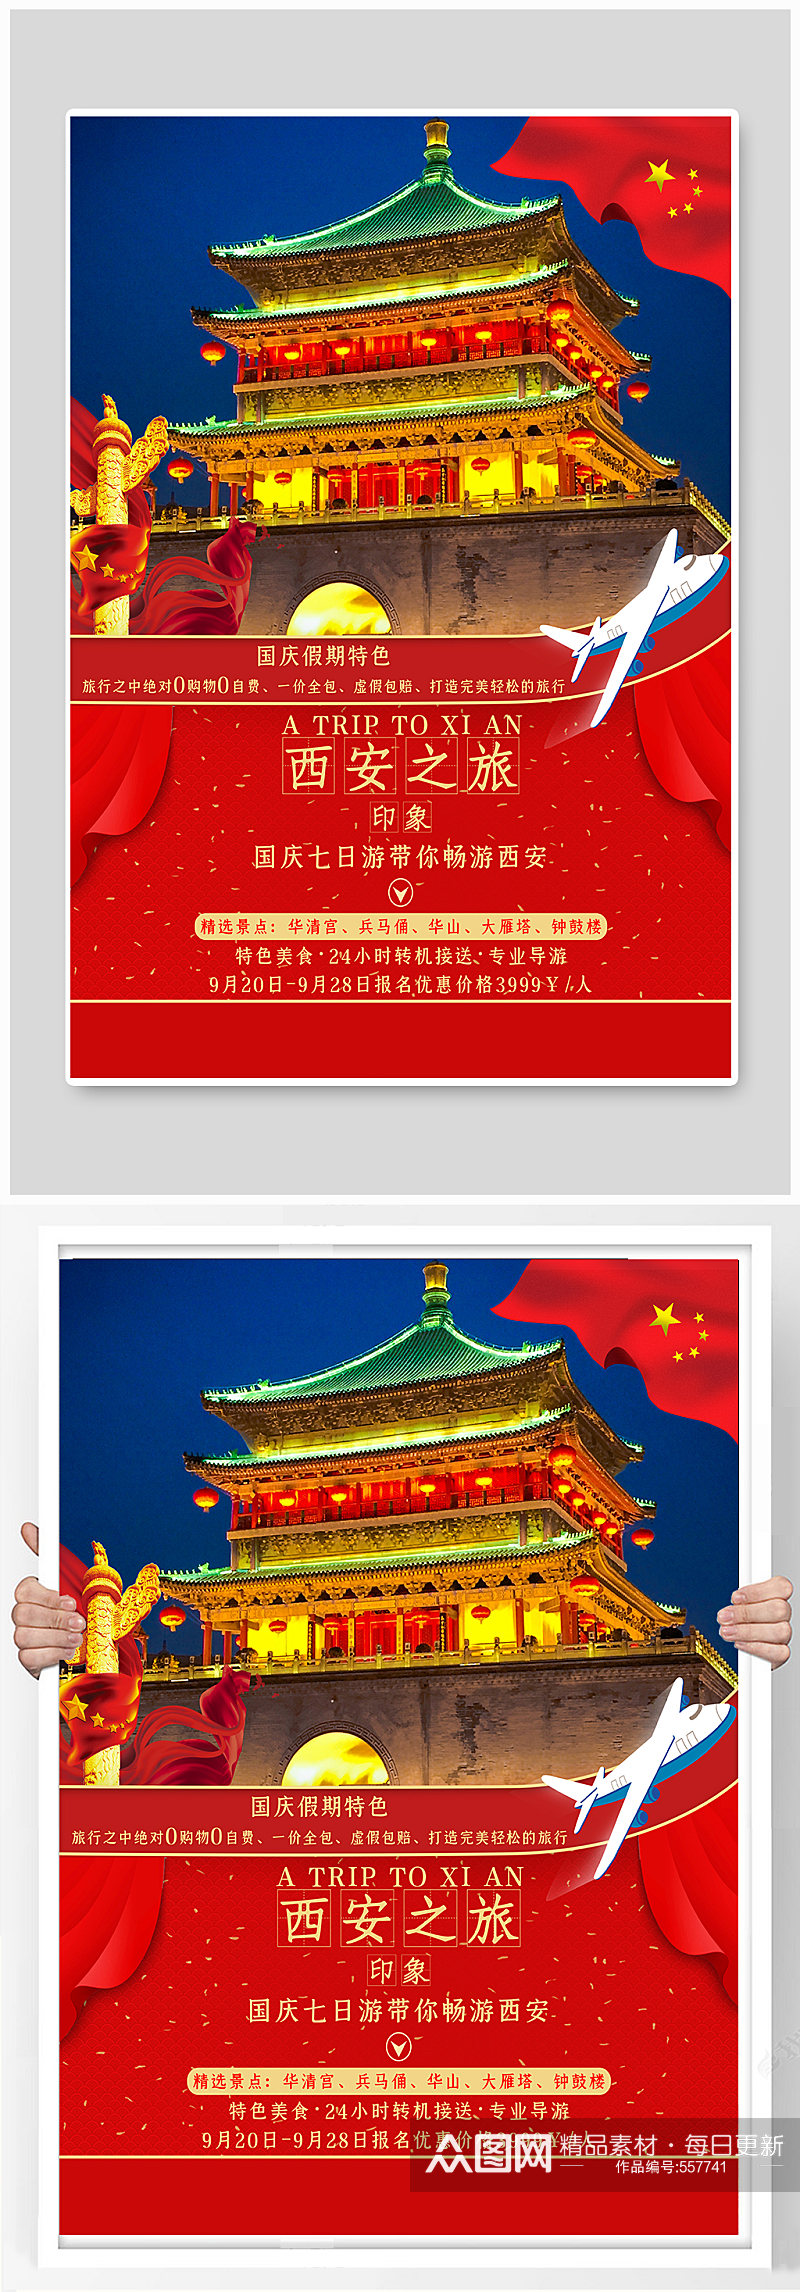 国庆节西安之旅海报素材